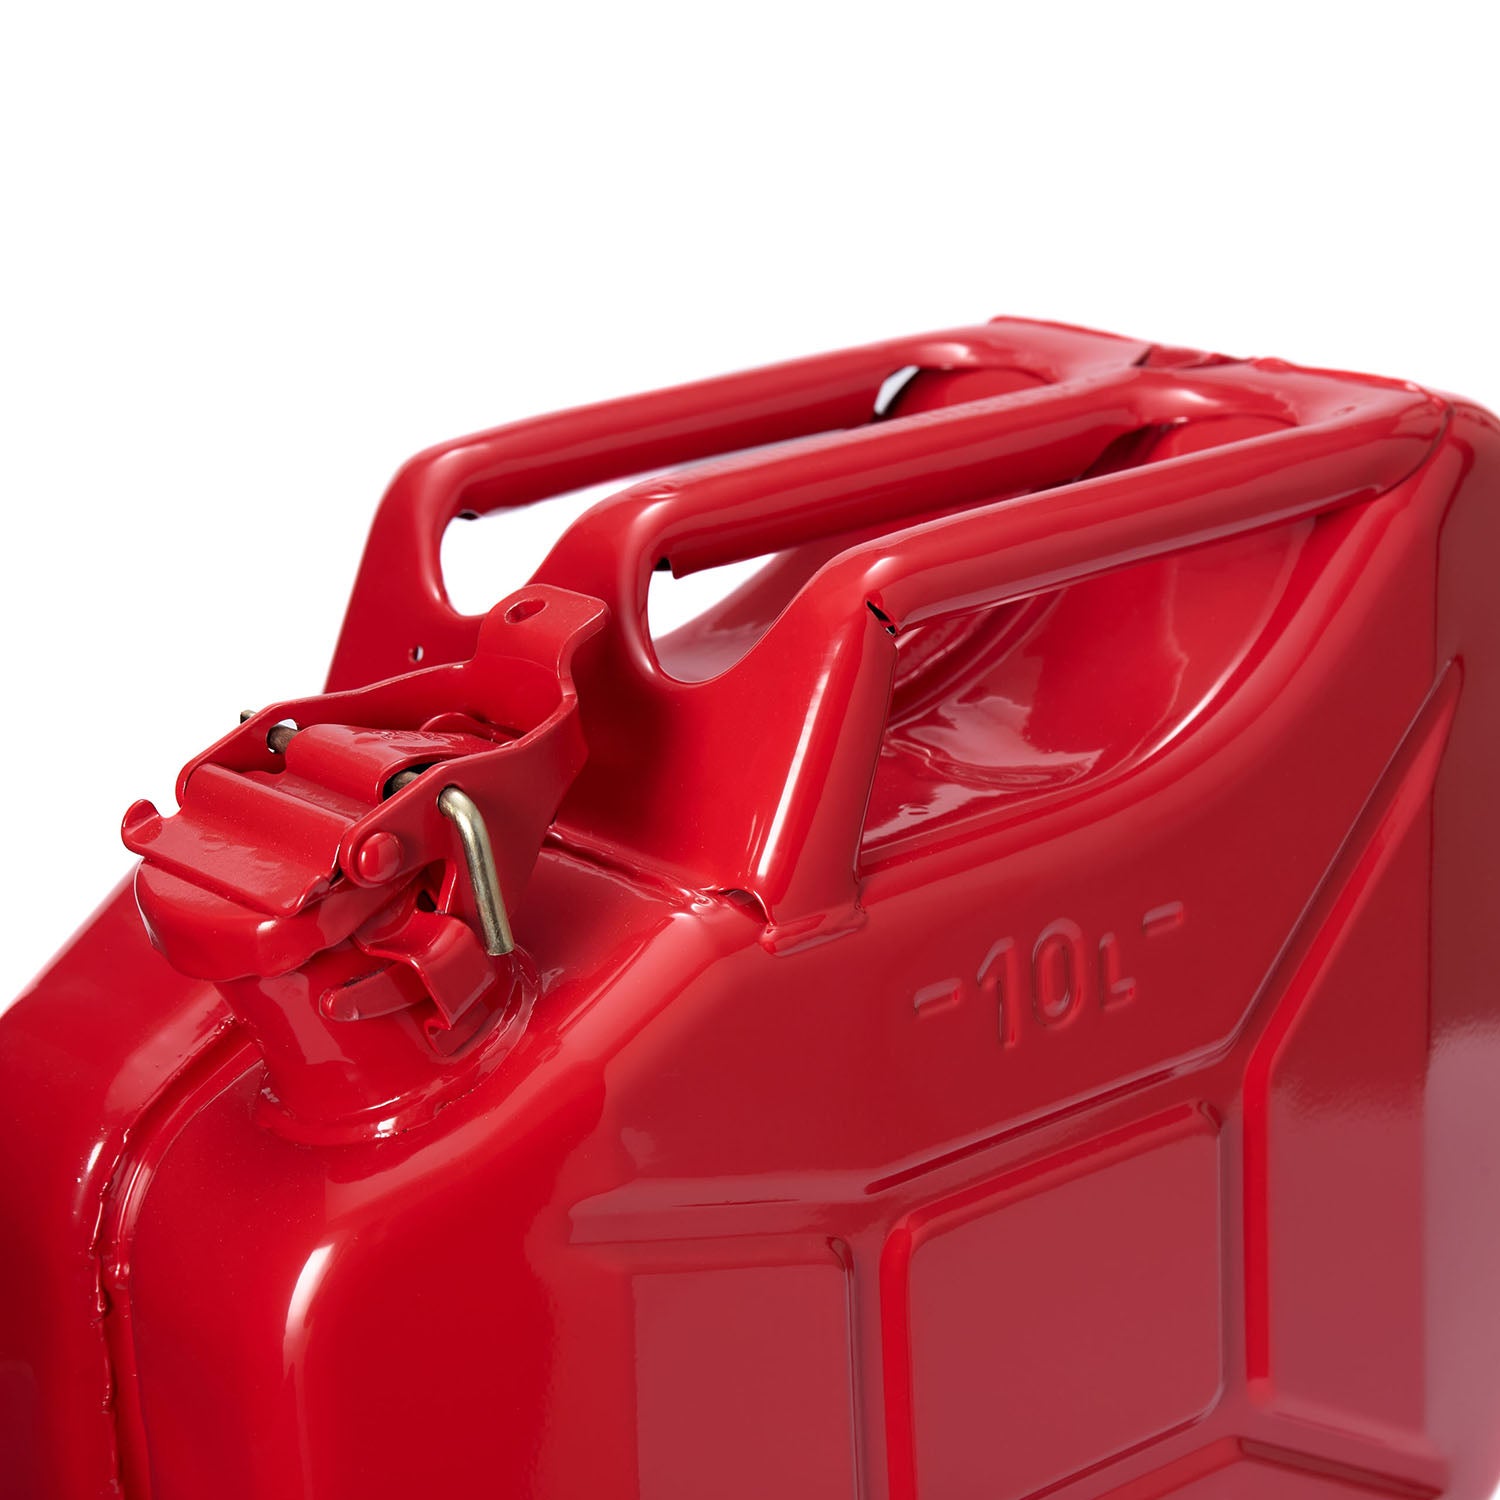 3x Metall Benzinkanister 10 Liter - Rot